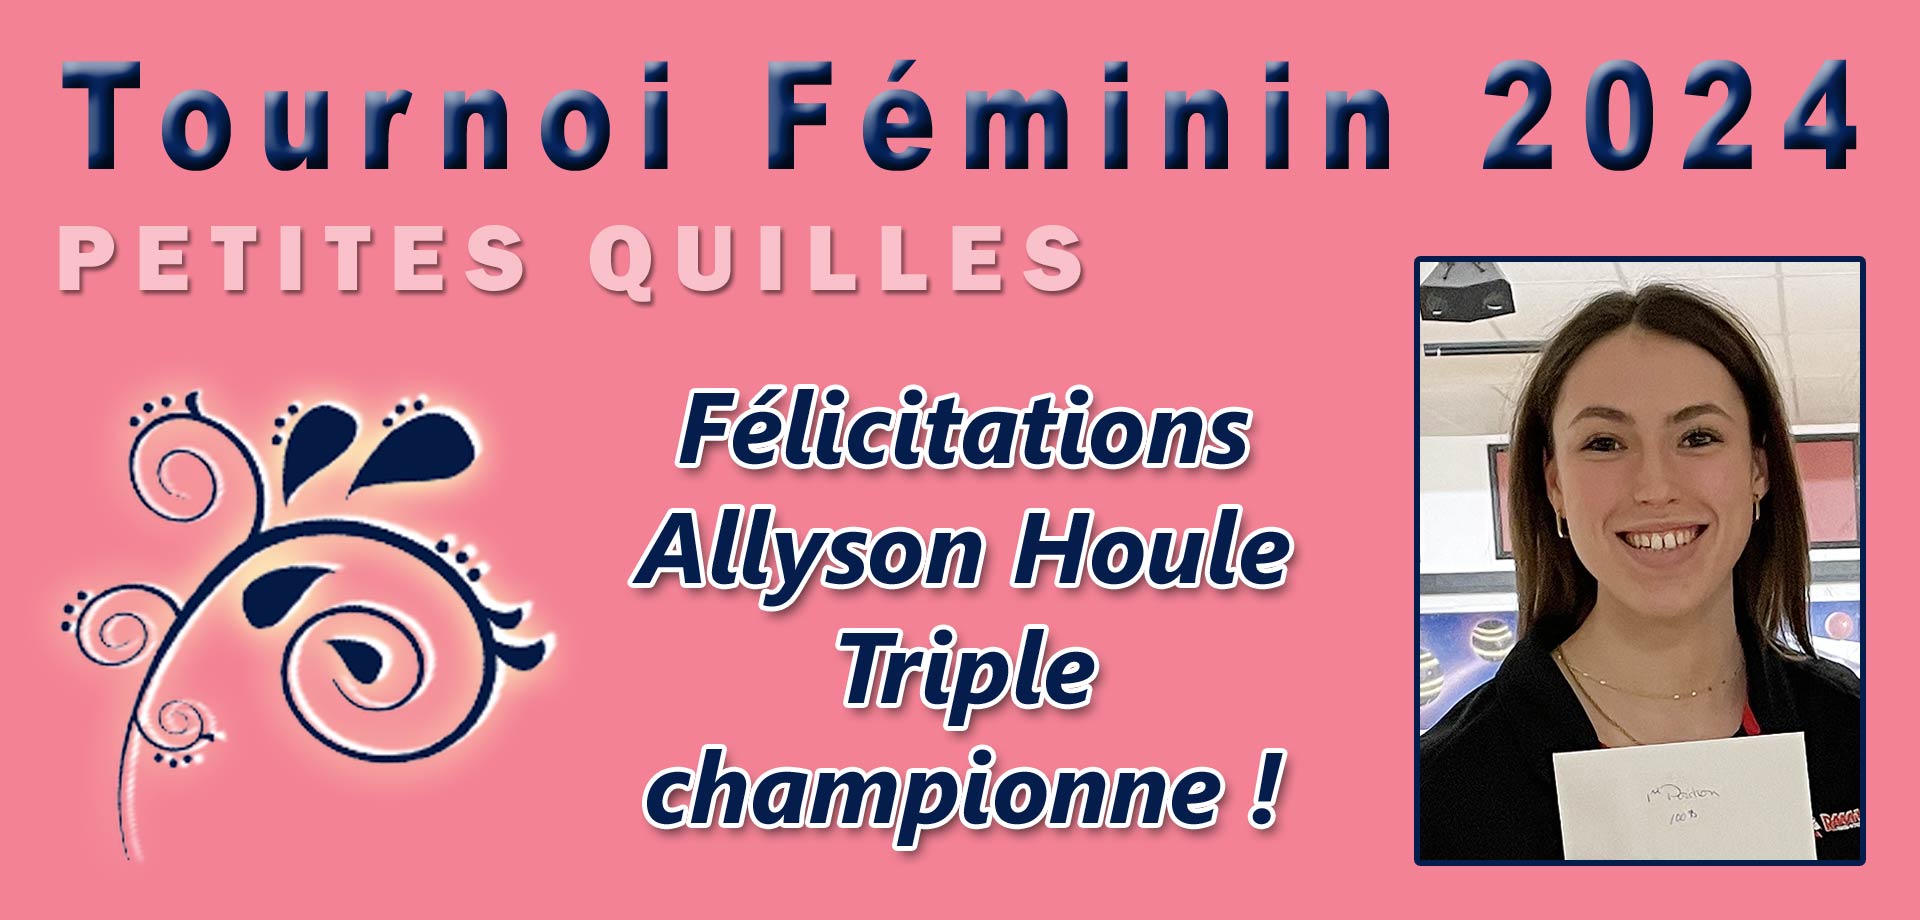 Allyson Houle - Championne du Tournoi Féminin 2024